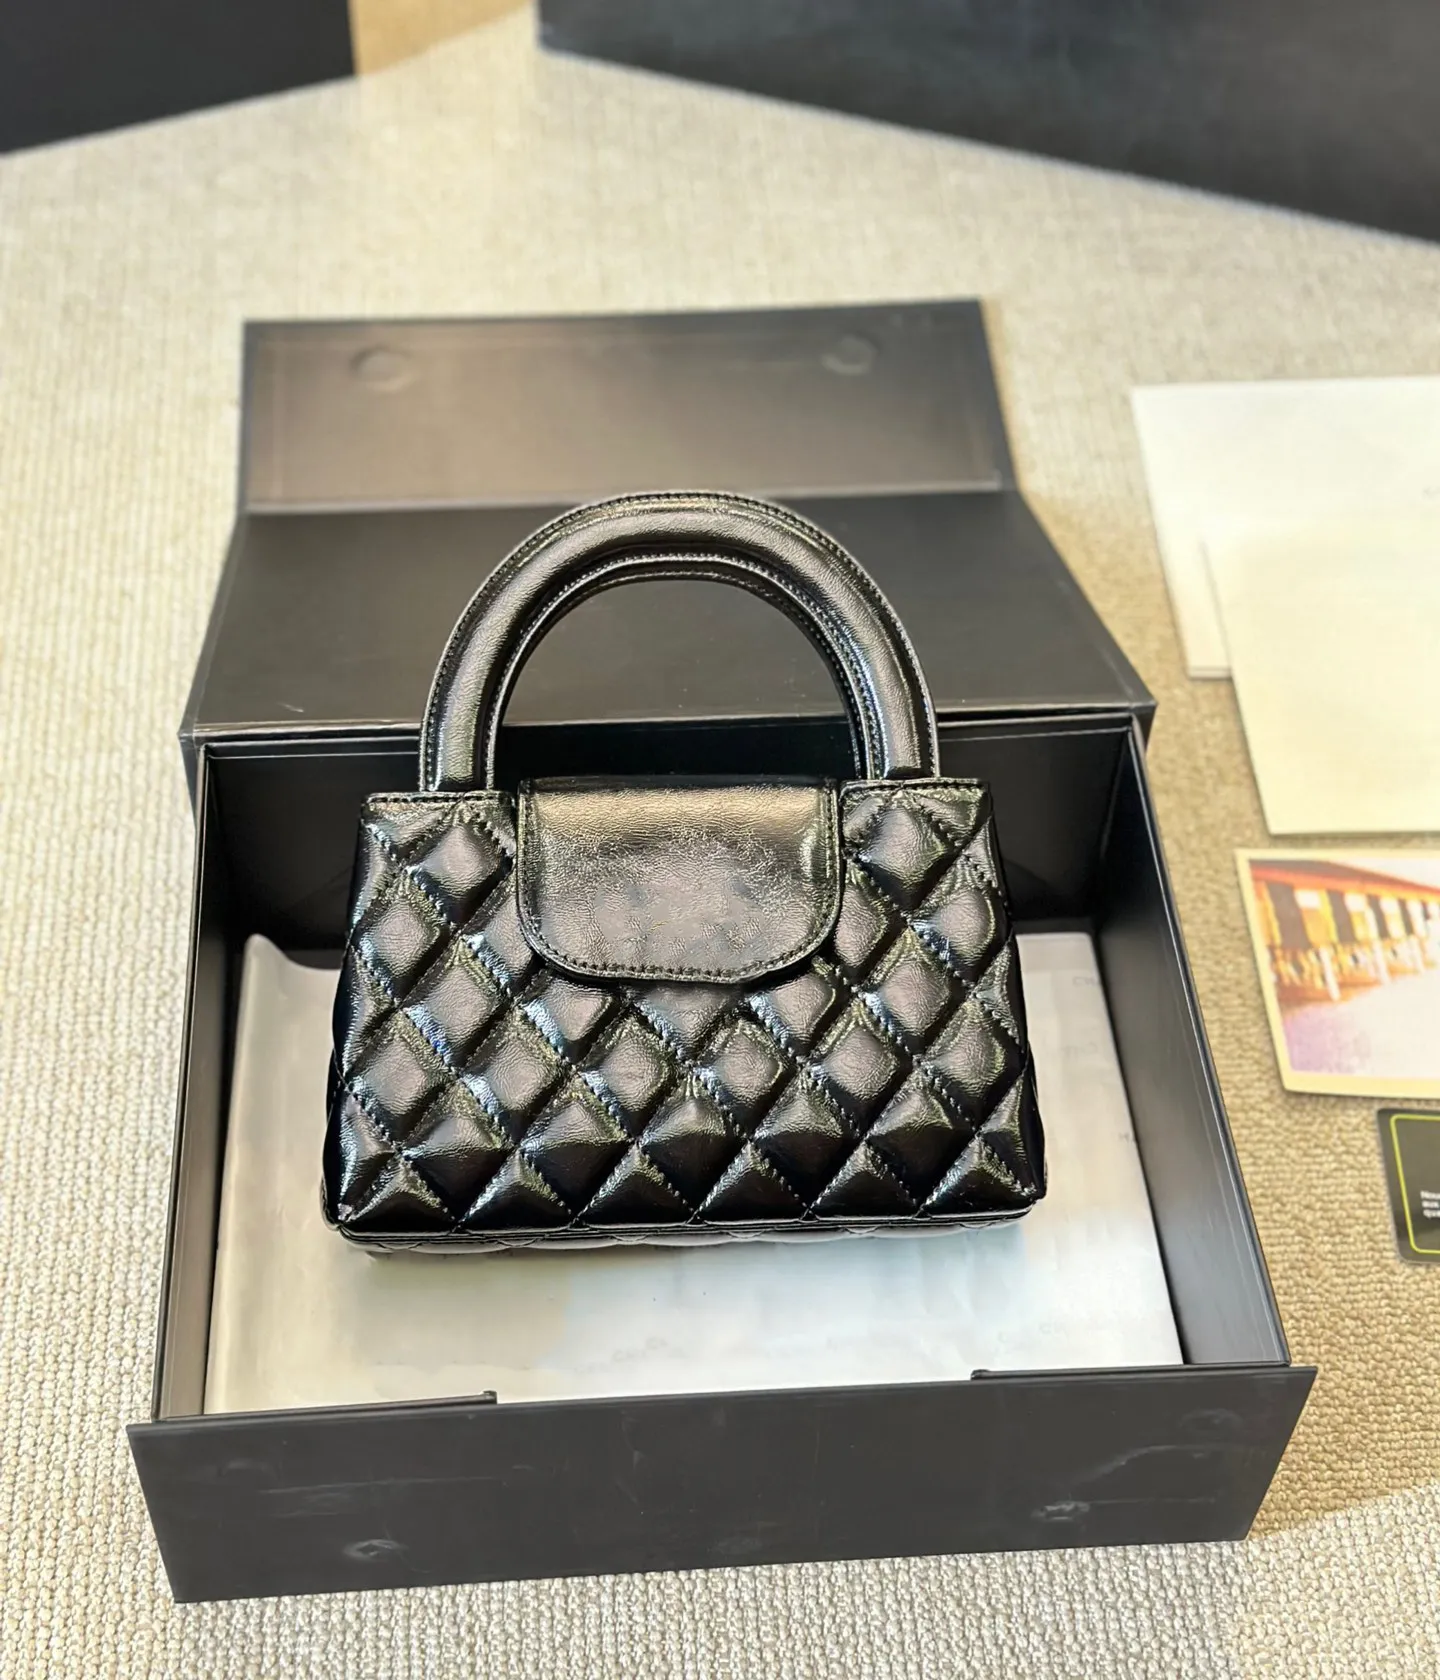 designer bag shoulder bag classic plaid flap caviar handbag chain leather double letter Multicolor color buckle square stripe lady messenger bag